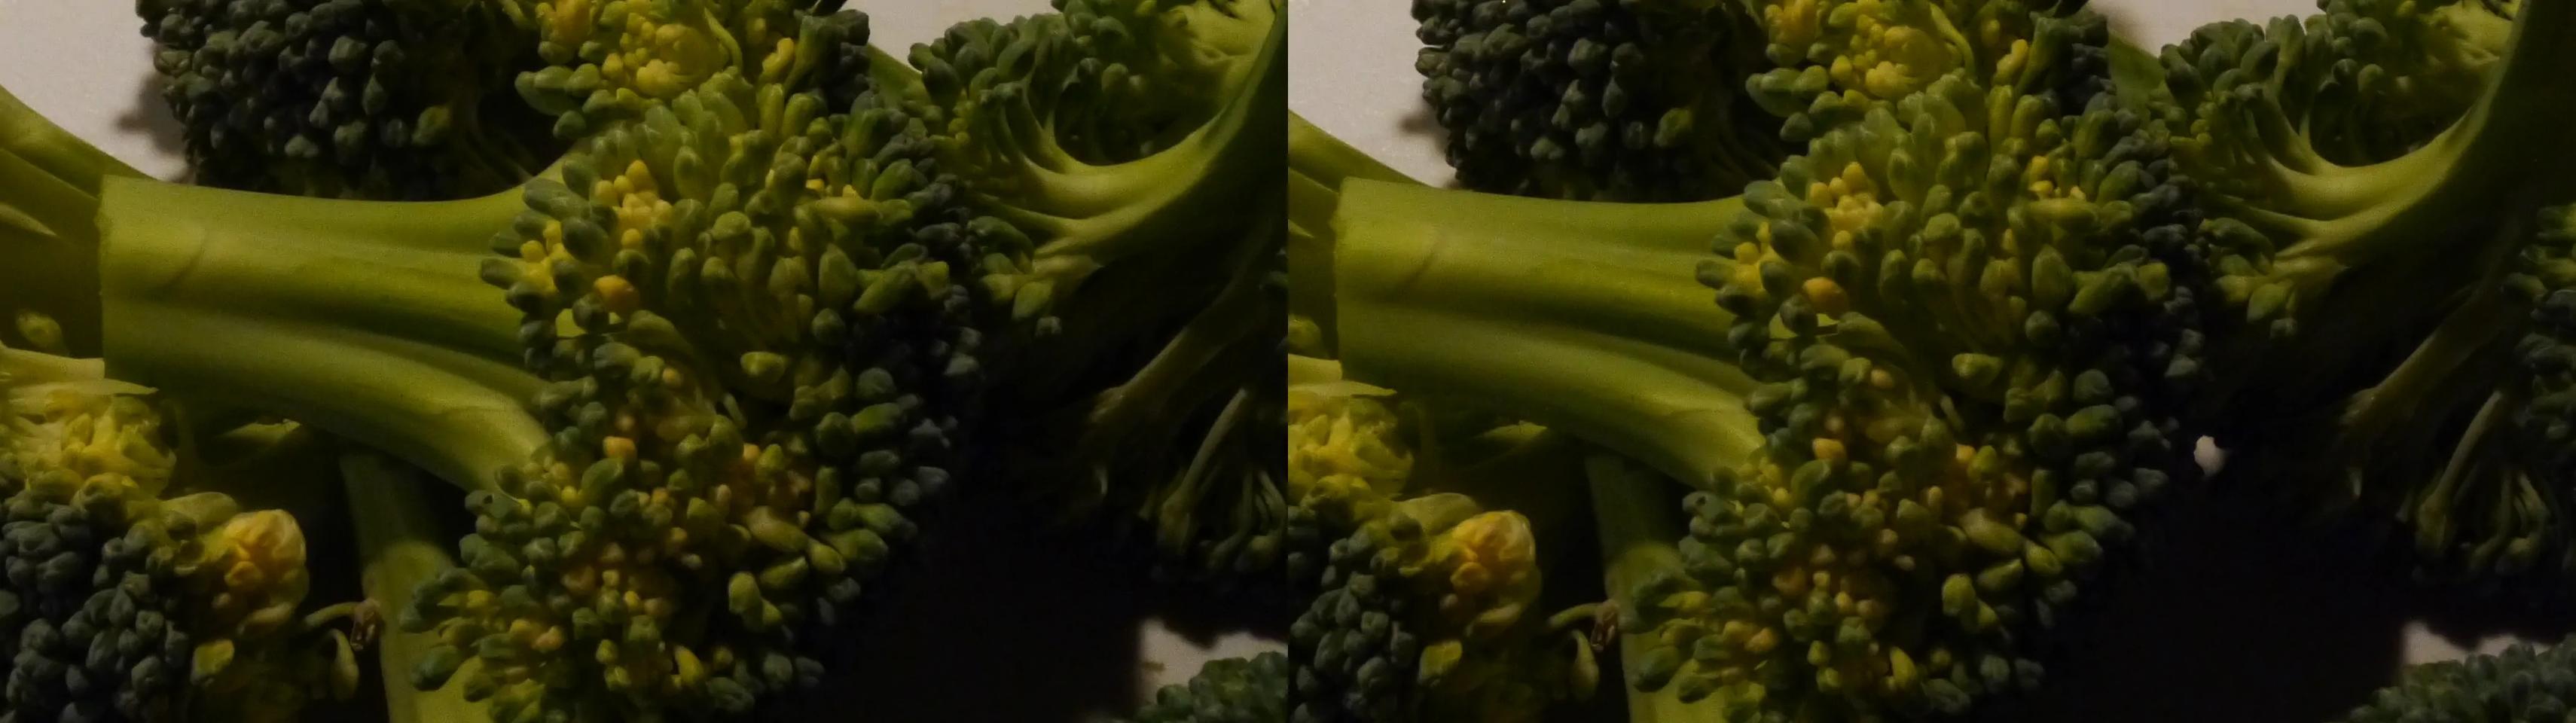 Broccoli Macro